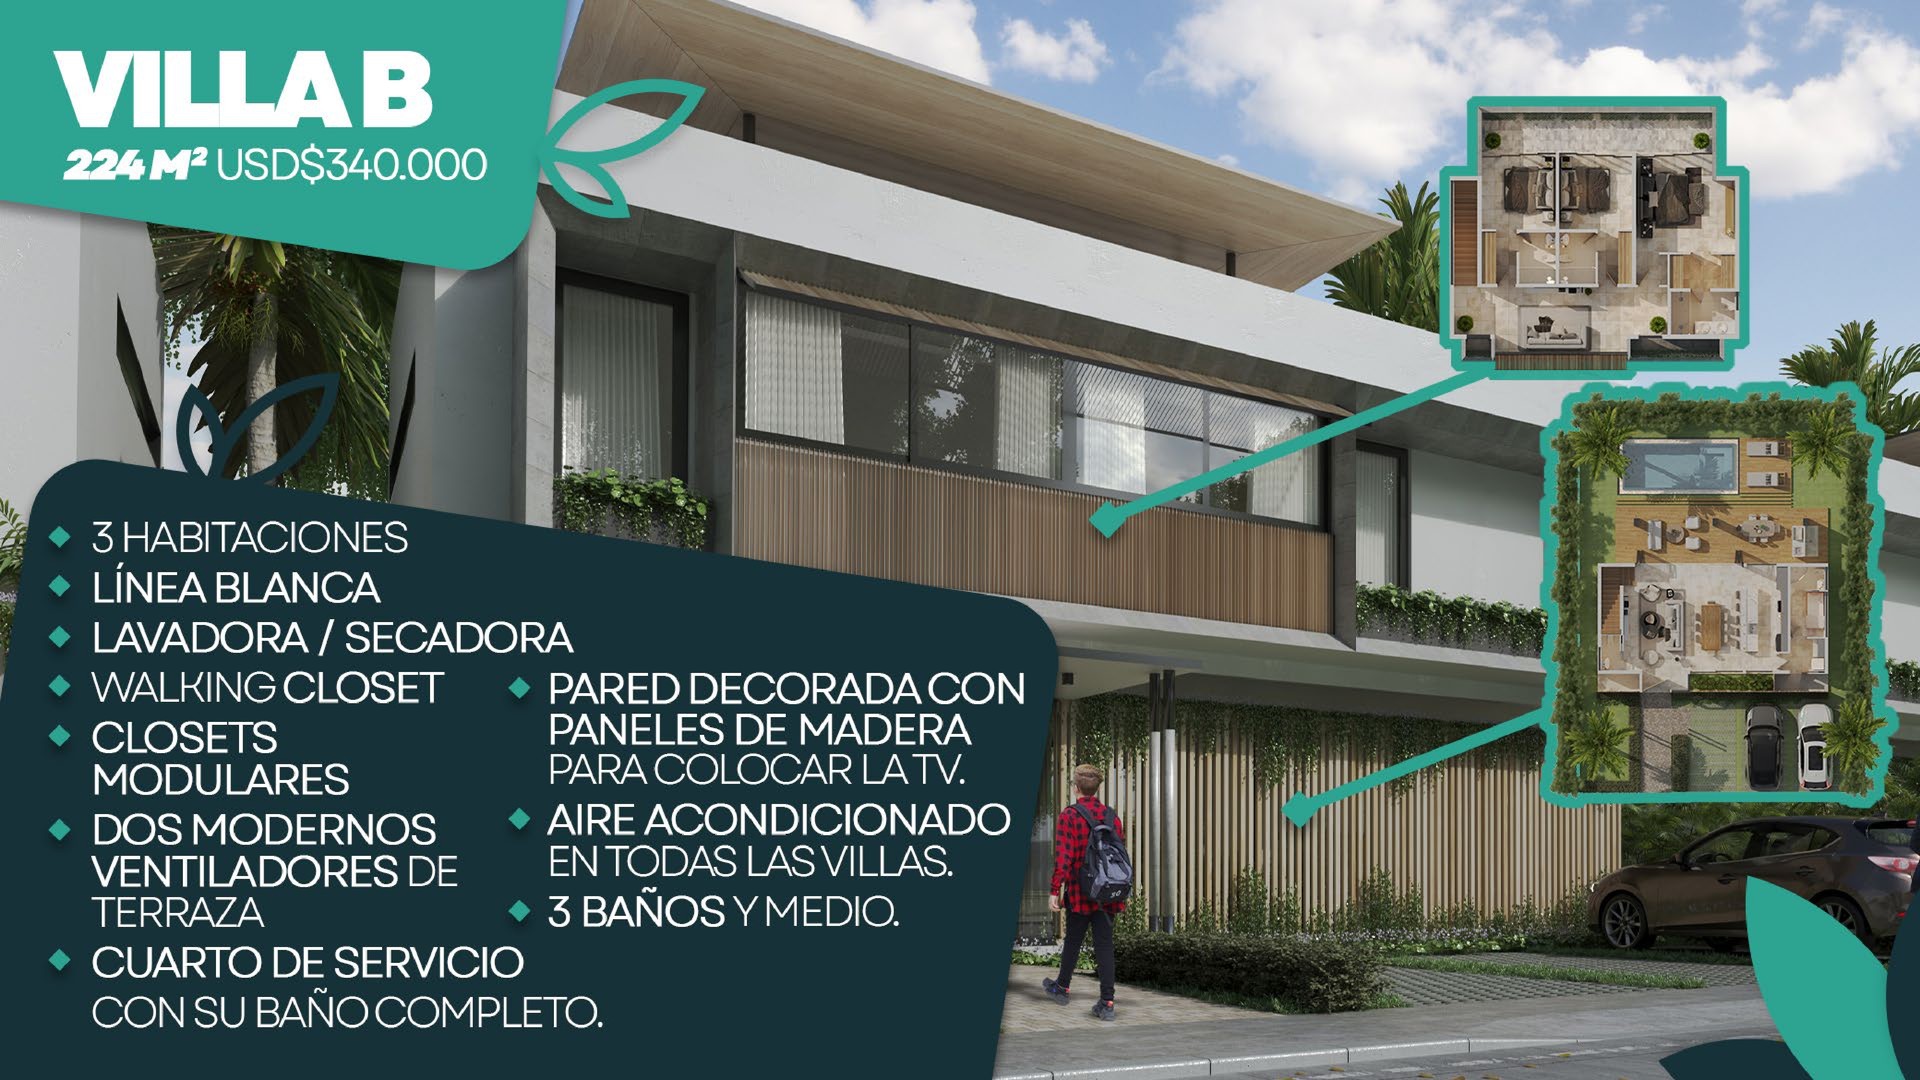 casas vacacionales y villas - Hermoso Proyecto en construccion en Punta Cana, Villas de 2 y 3 hab, amobladas.  2